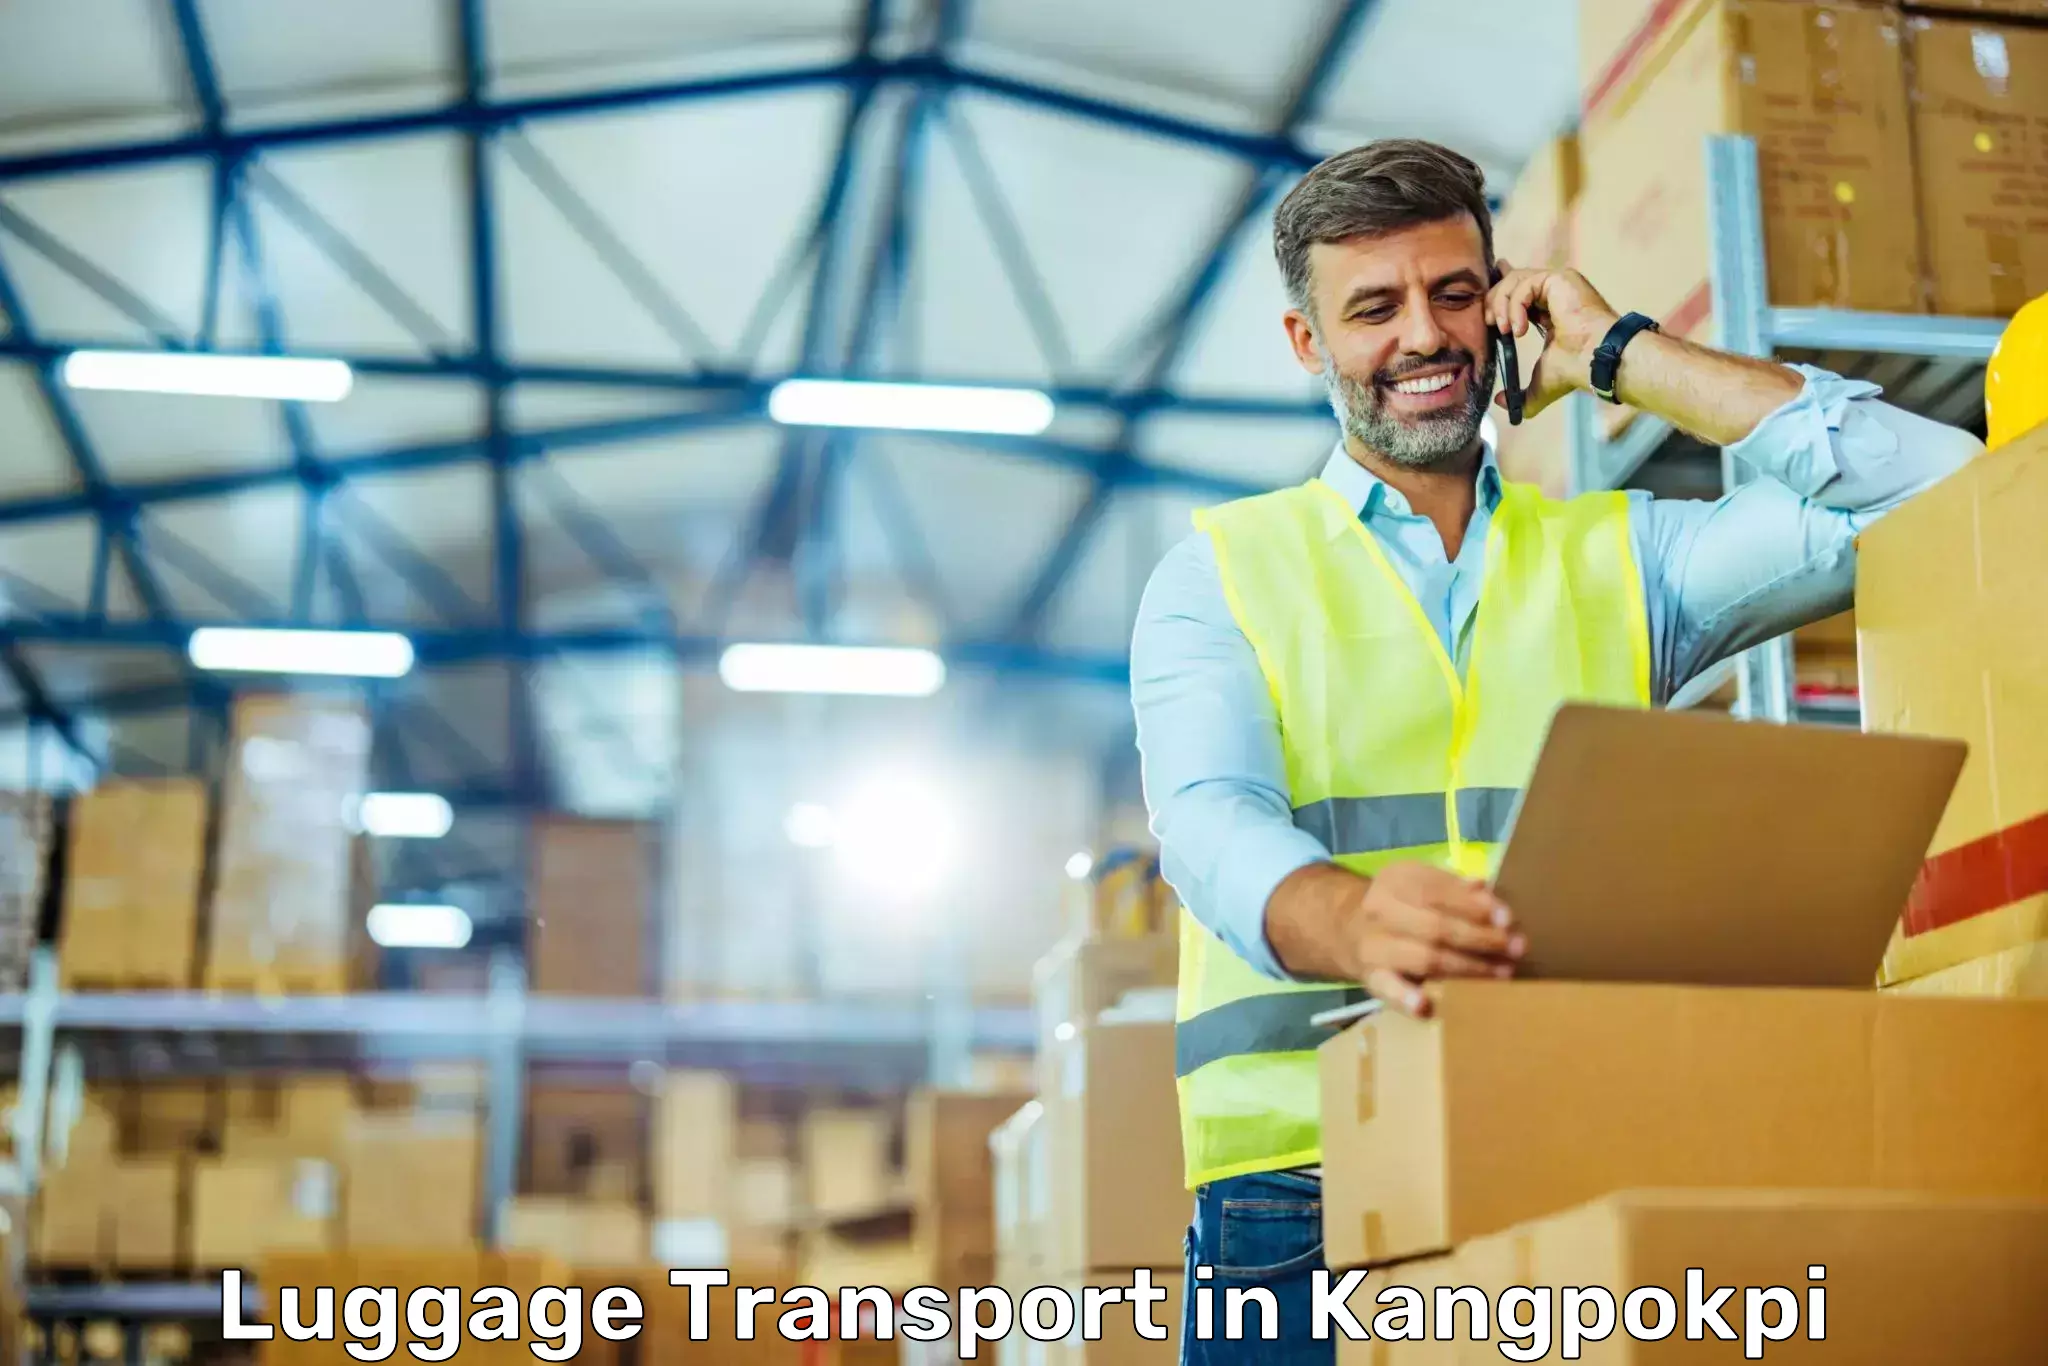 Luggage shipment tracking in Kangpokpi